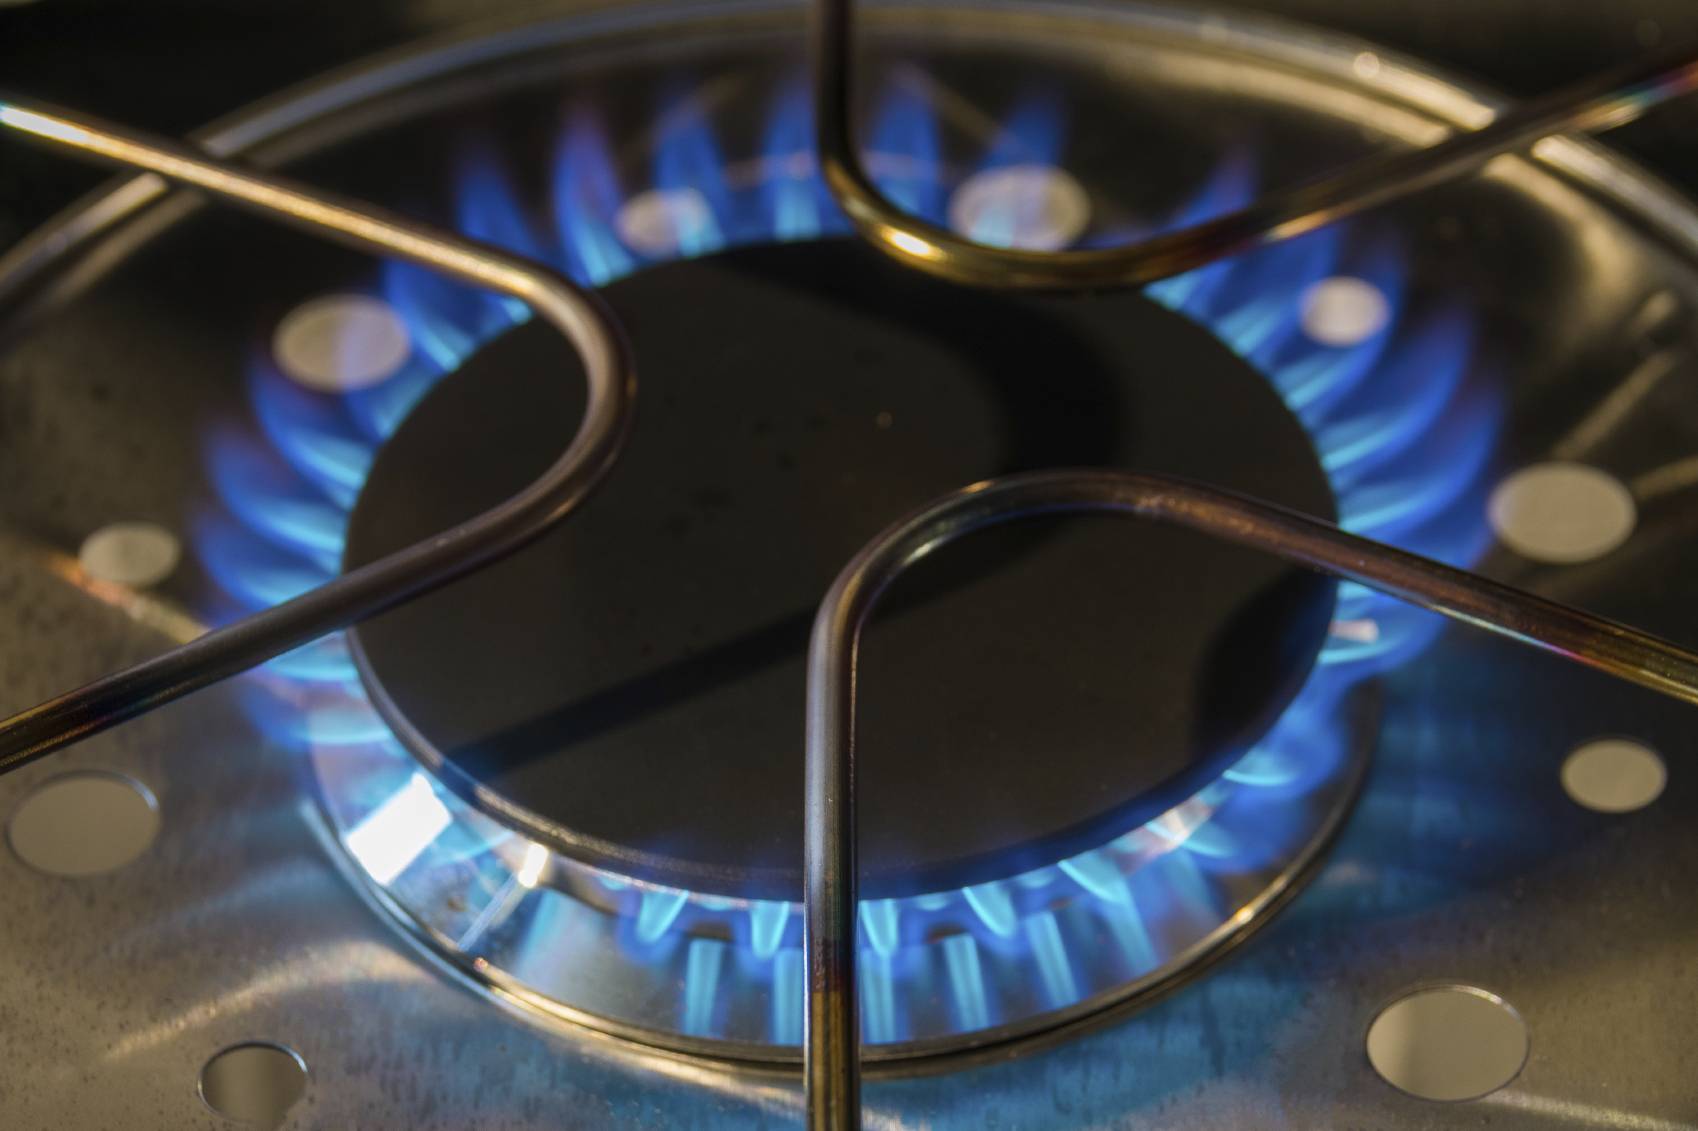 Installer un branchement au gaz naturel | Pratique.fr